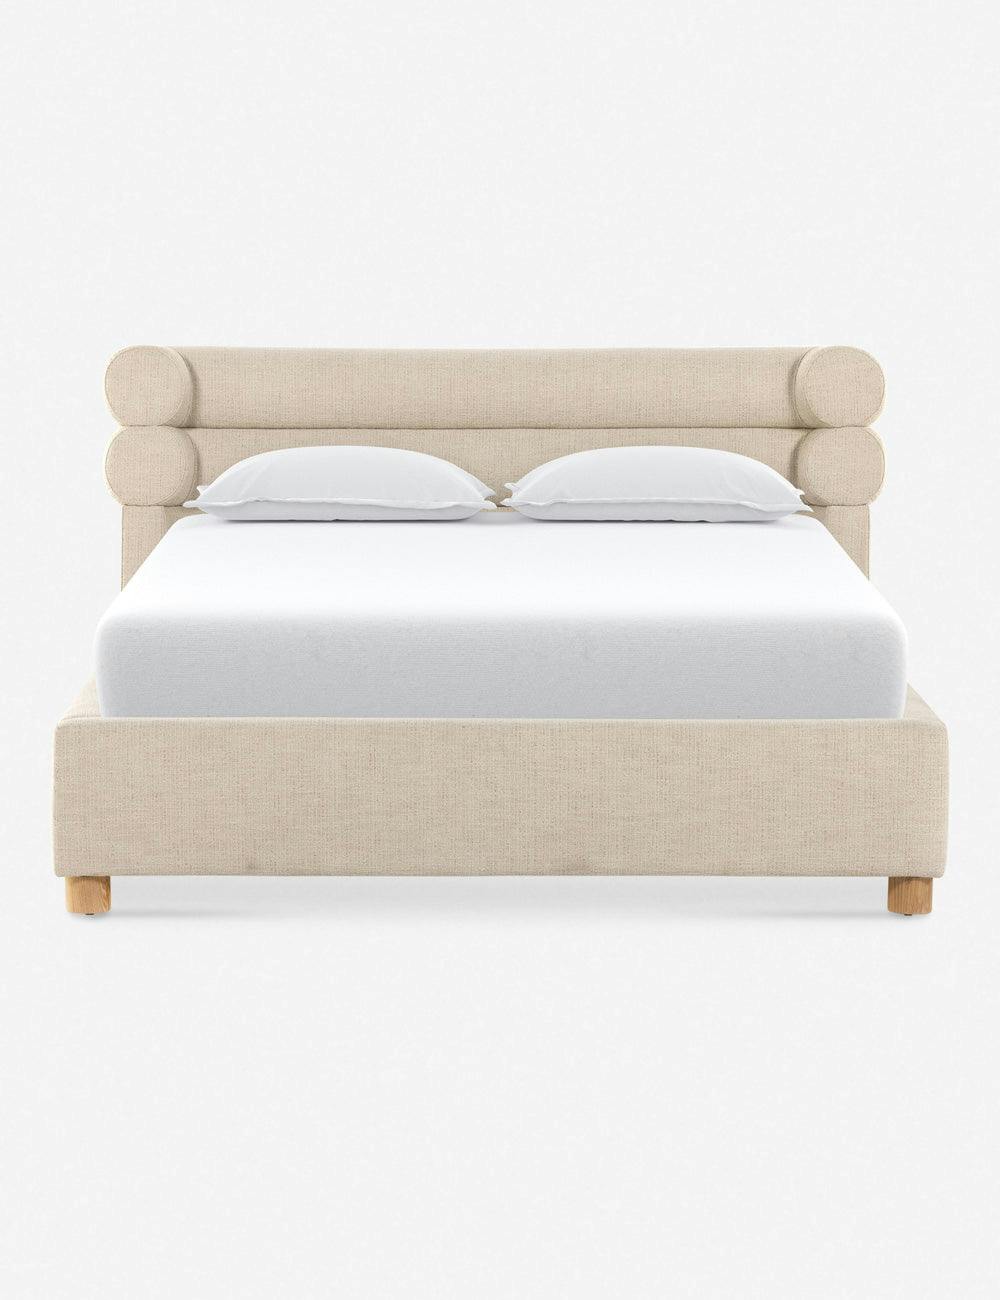 Tomi King Cream Upholstered Platform Bed